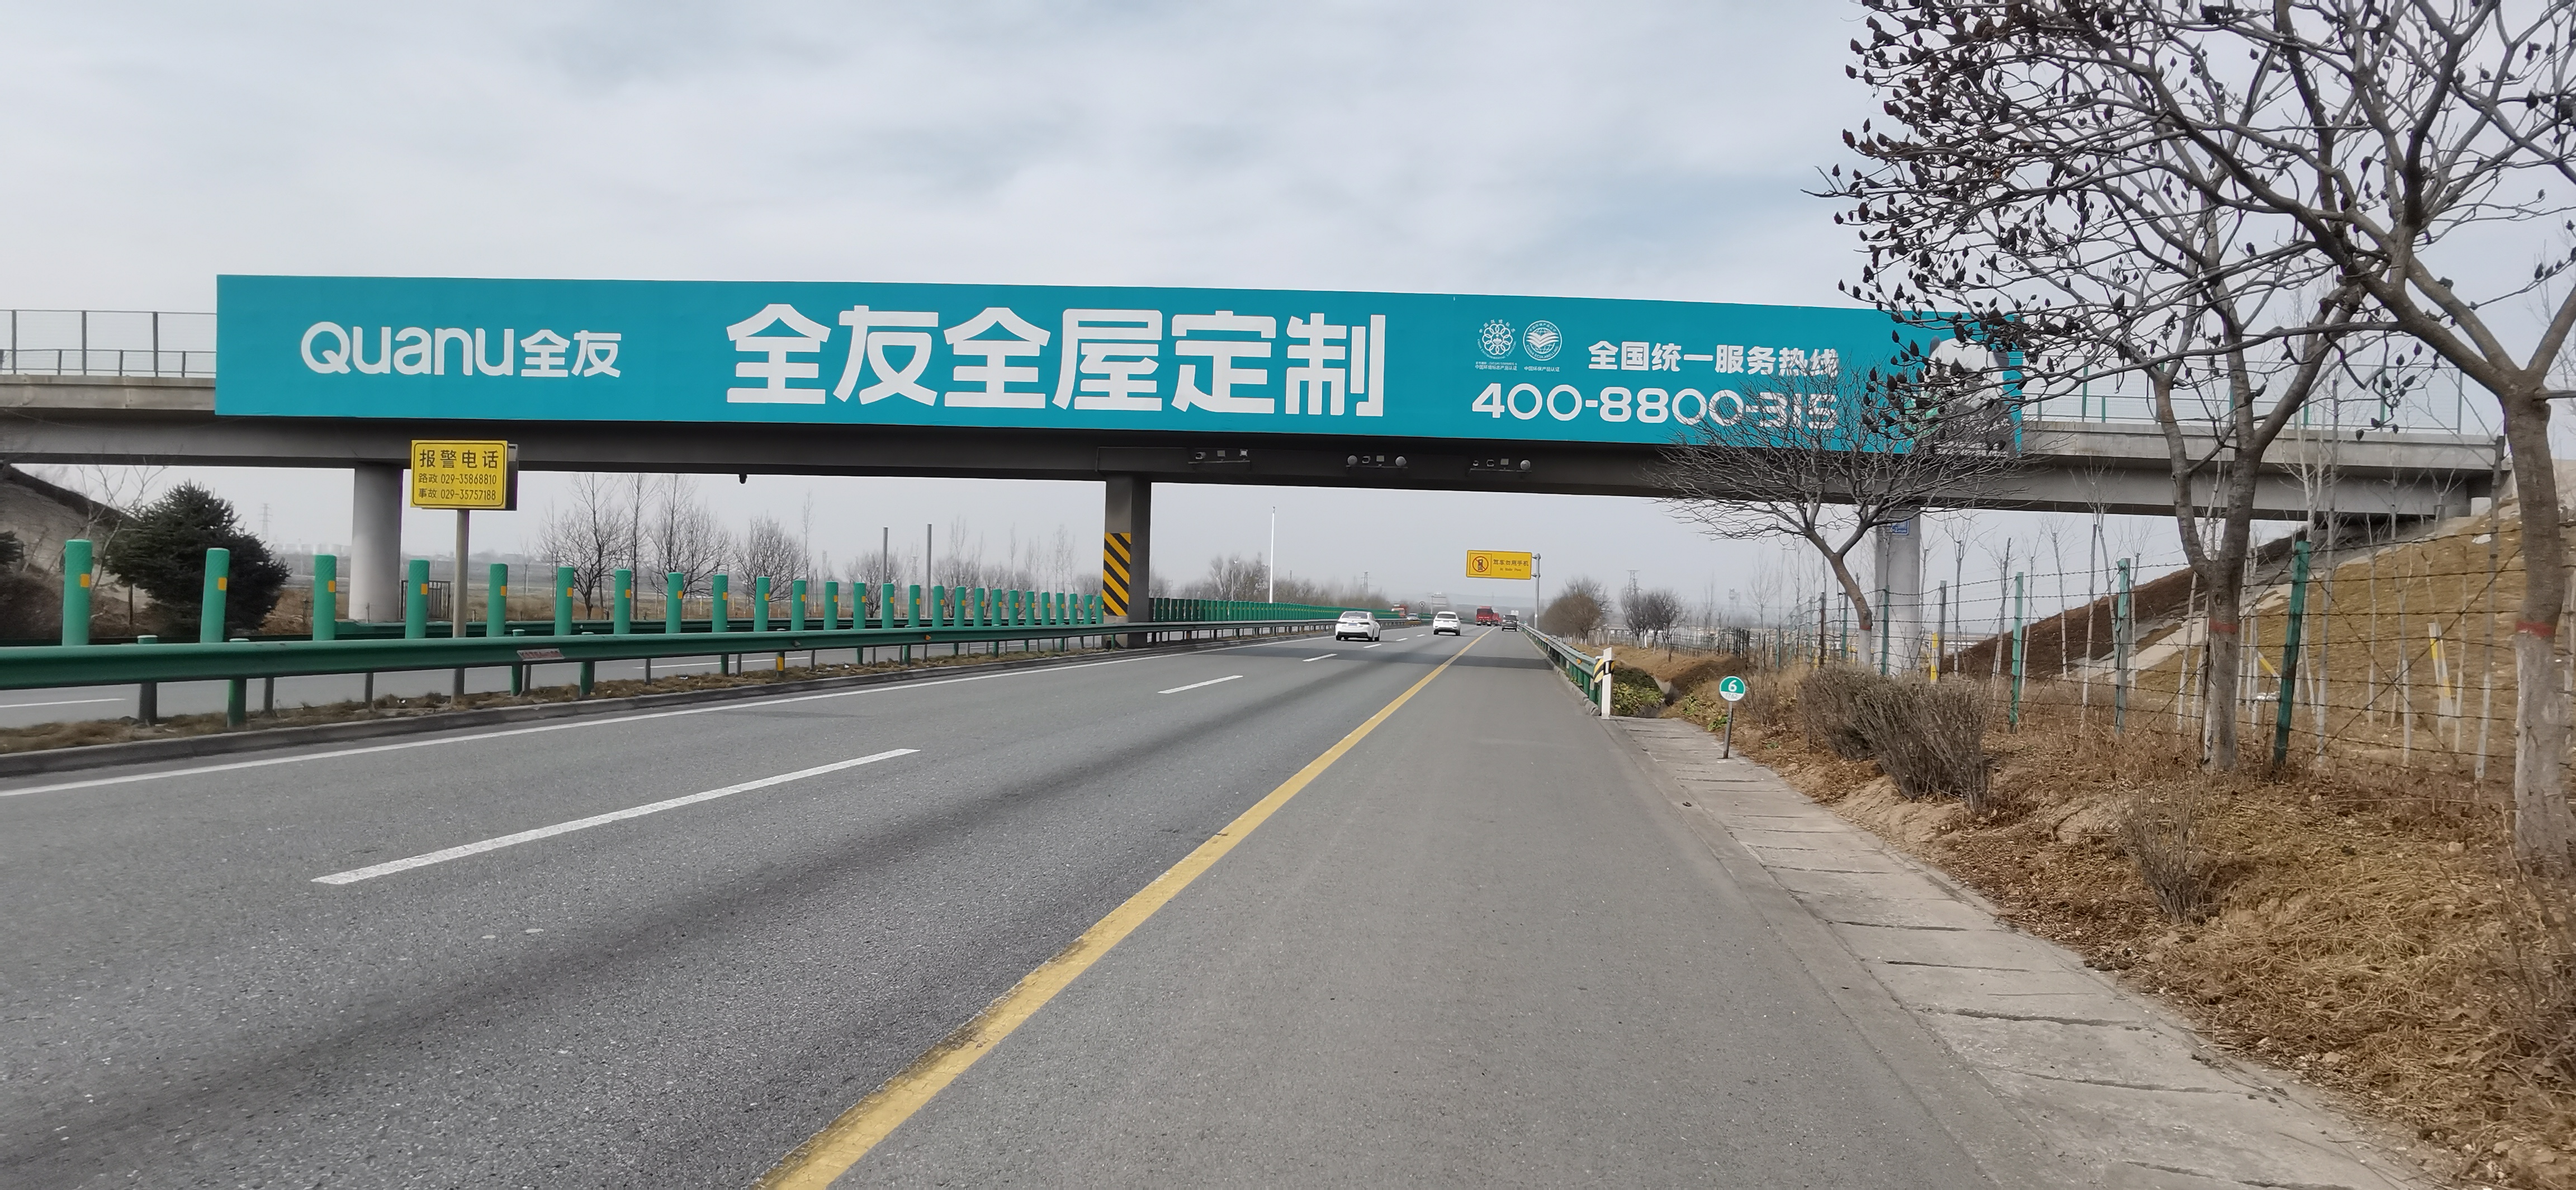 陕西高速路广告 陕西高速路跨线桥广告